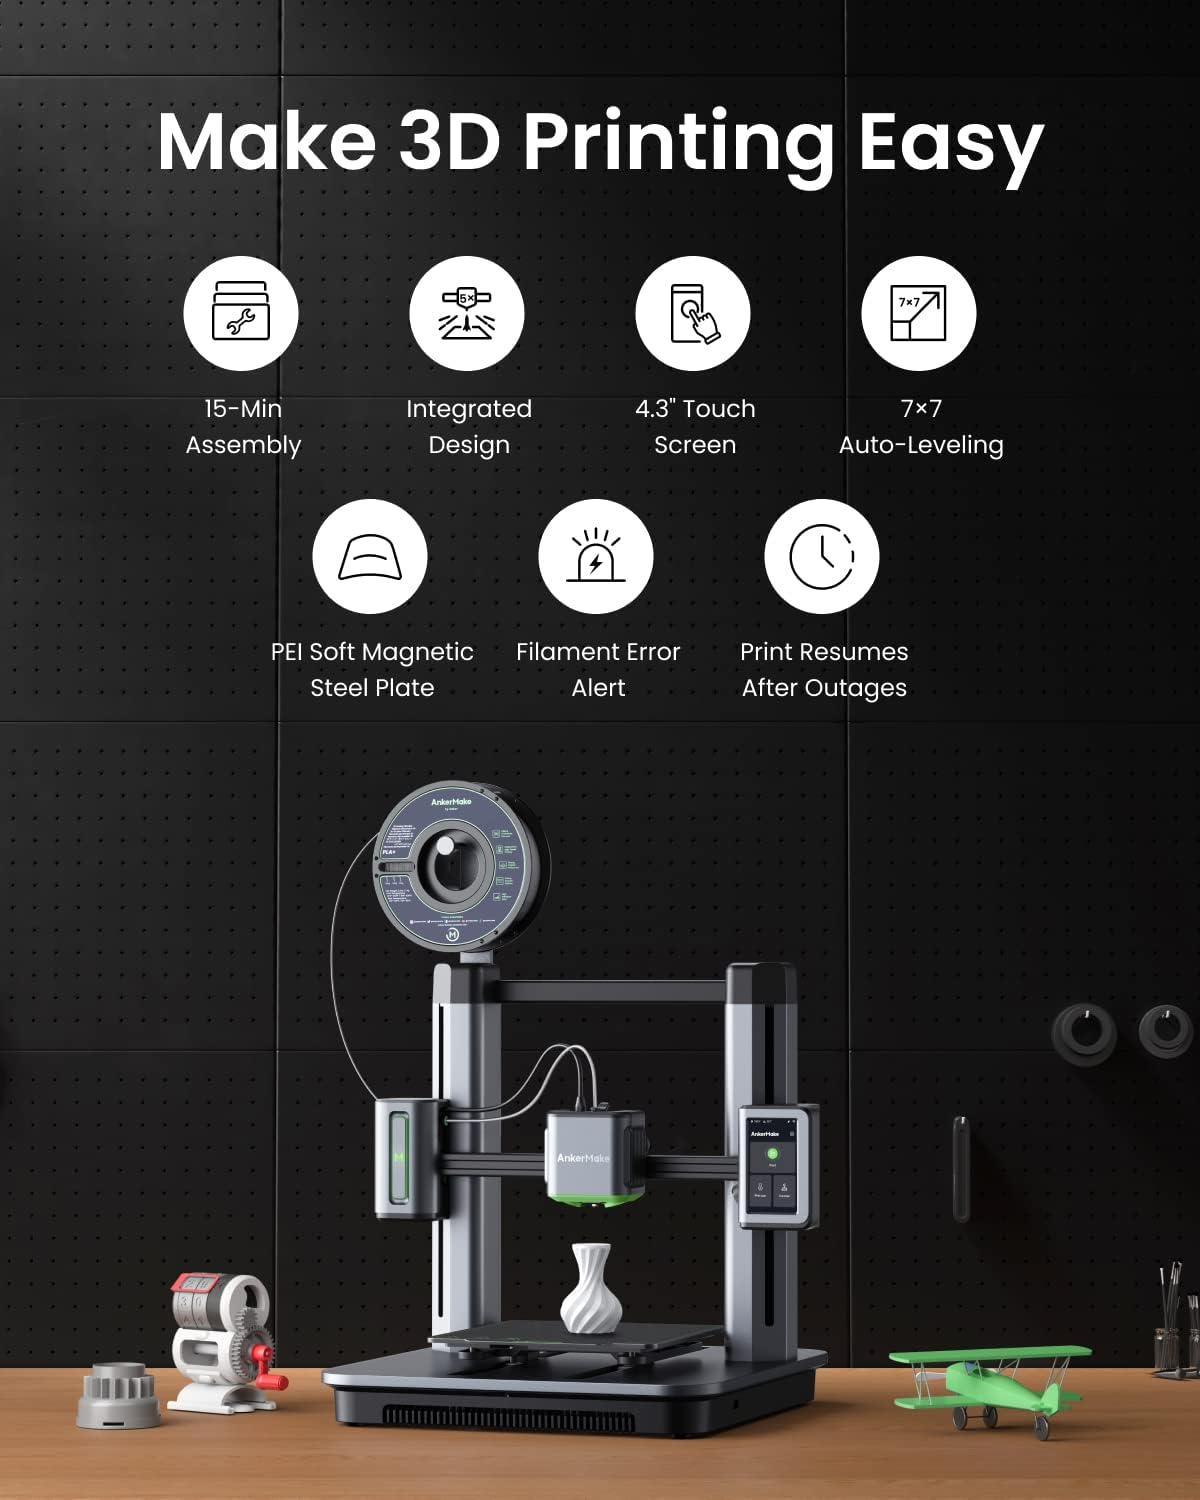 پرینتر سه بعدی مدل AnkerMake M5 3D Printer - ارسال 10 الی 15 روز کاری